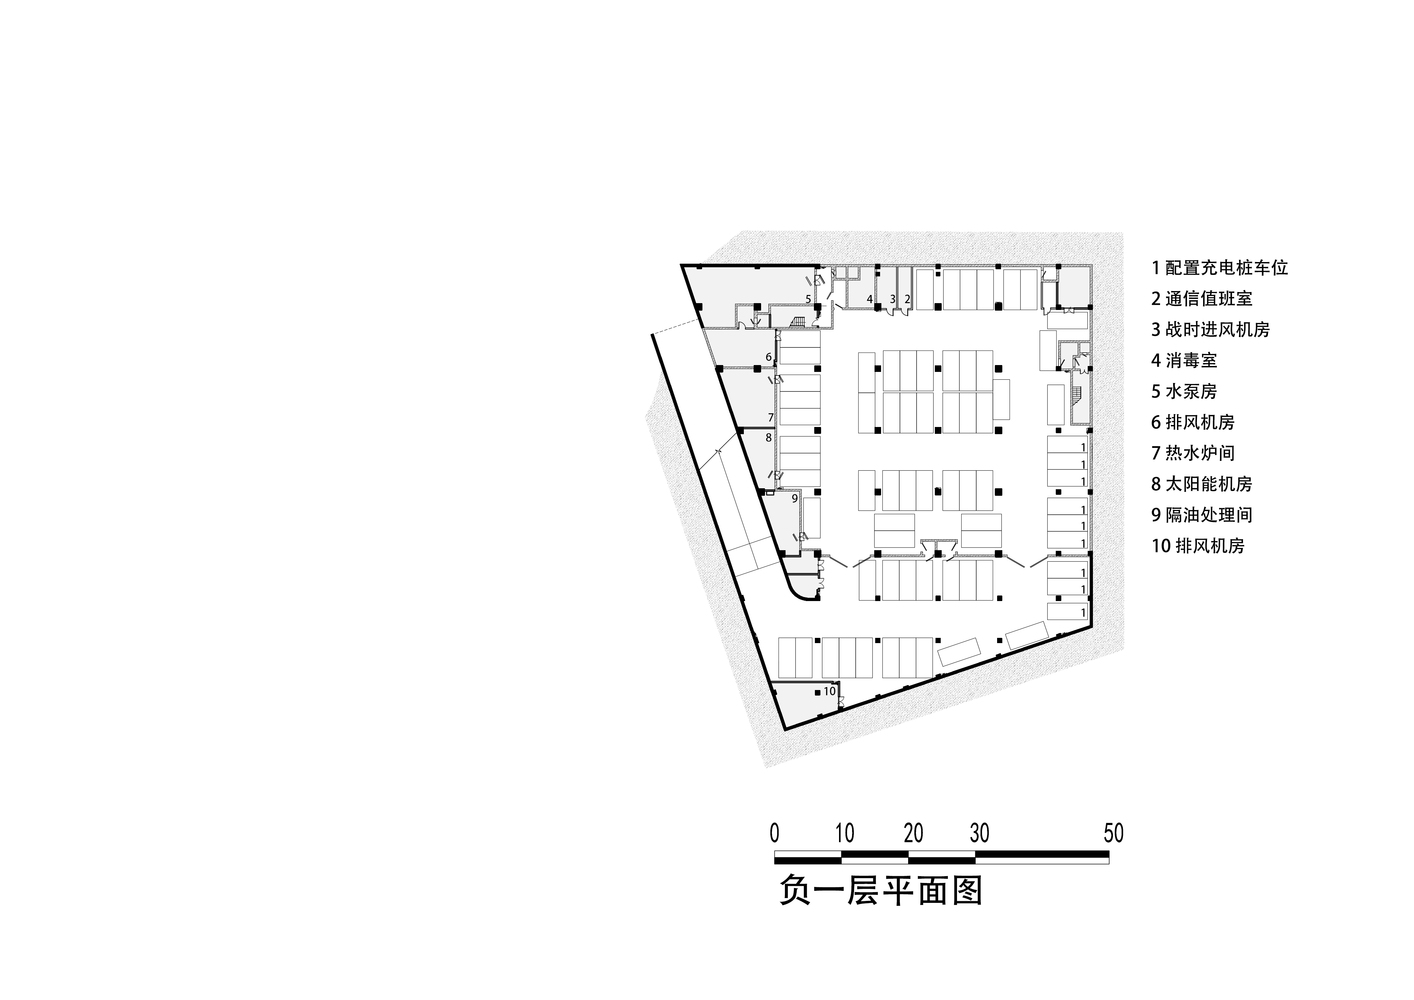 上海唐镇新市镇配套中学建筑设计 / 华建集团上海建筑设计研究院